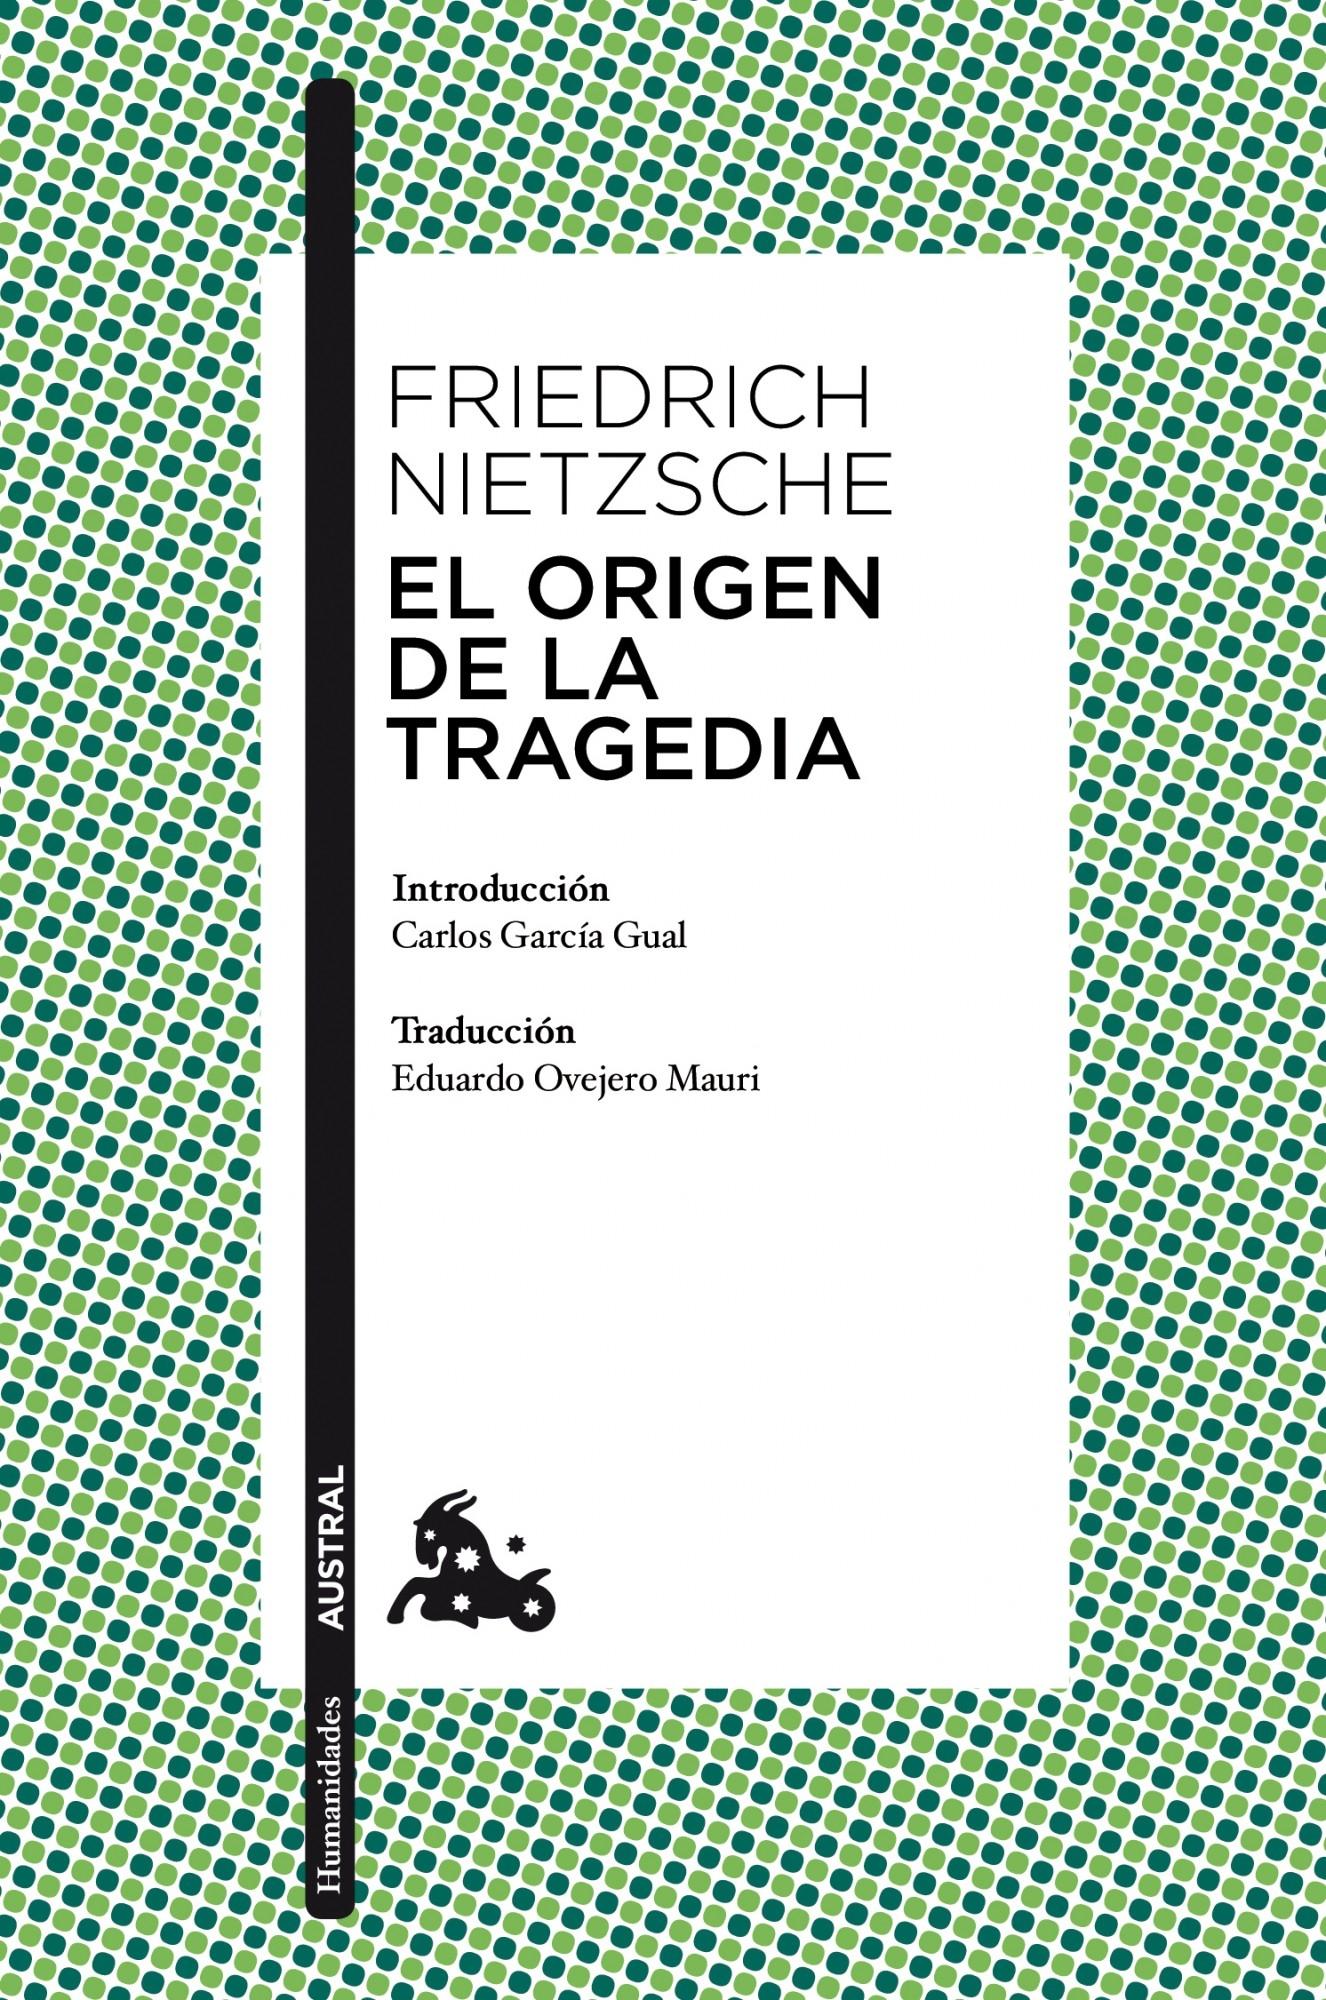 El Origen de la Tragedia "Introducción de Carlos García Gual. Traducción de Eduardo Ovejero Mauri"